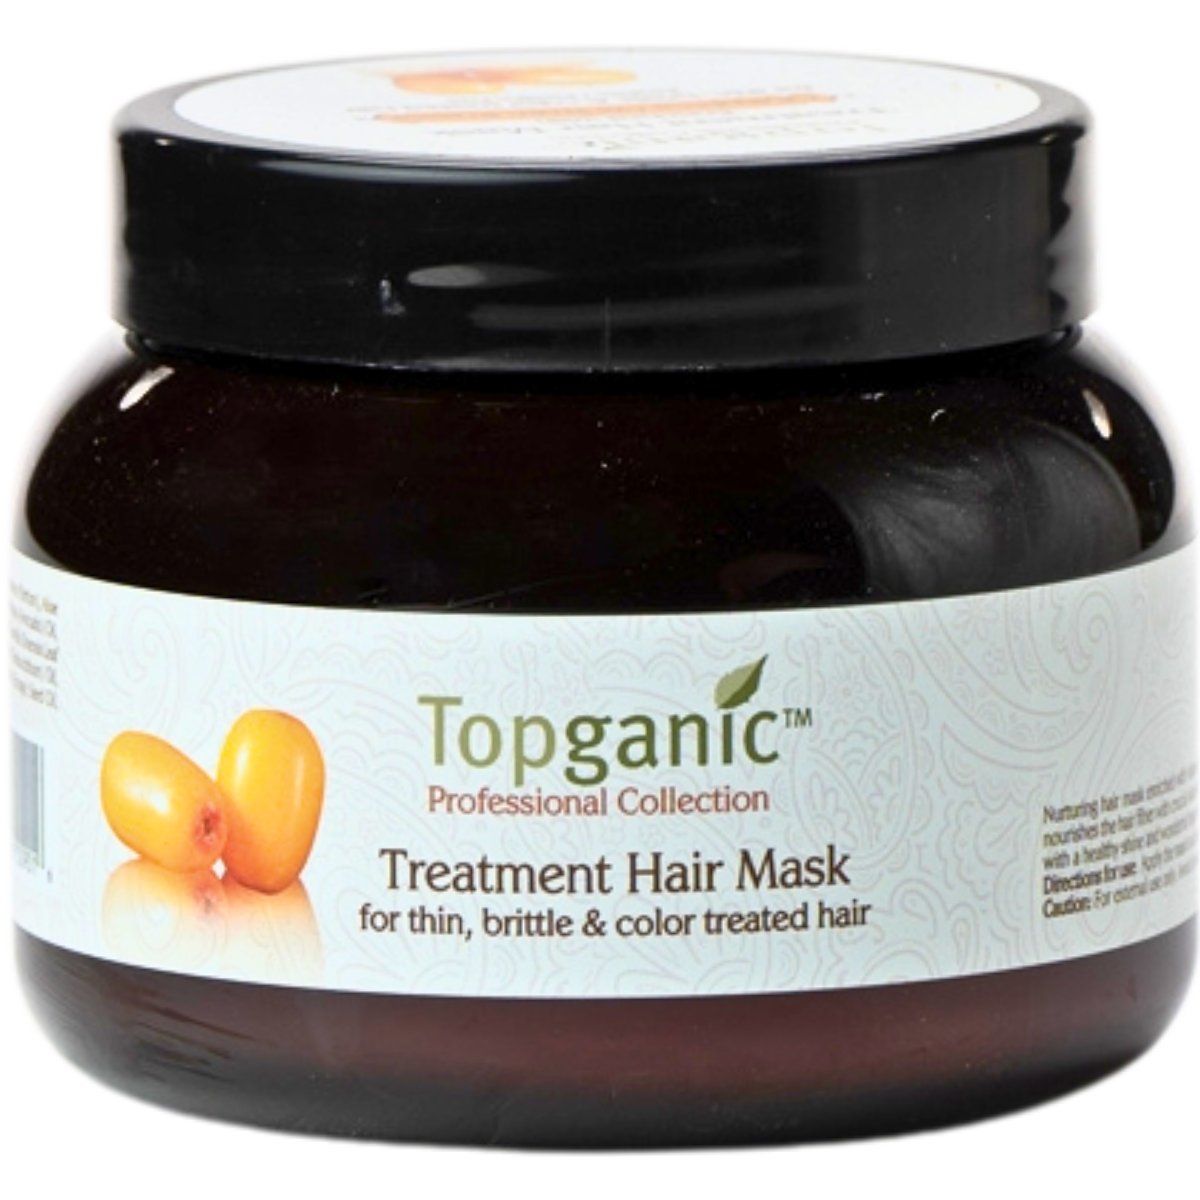 מסיכה לשיער דק, שביר, צבוע ולשיער שעבר טיפולים TOPGANIC מועשר באובליפיחה טופגאניק 500 מ"ל